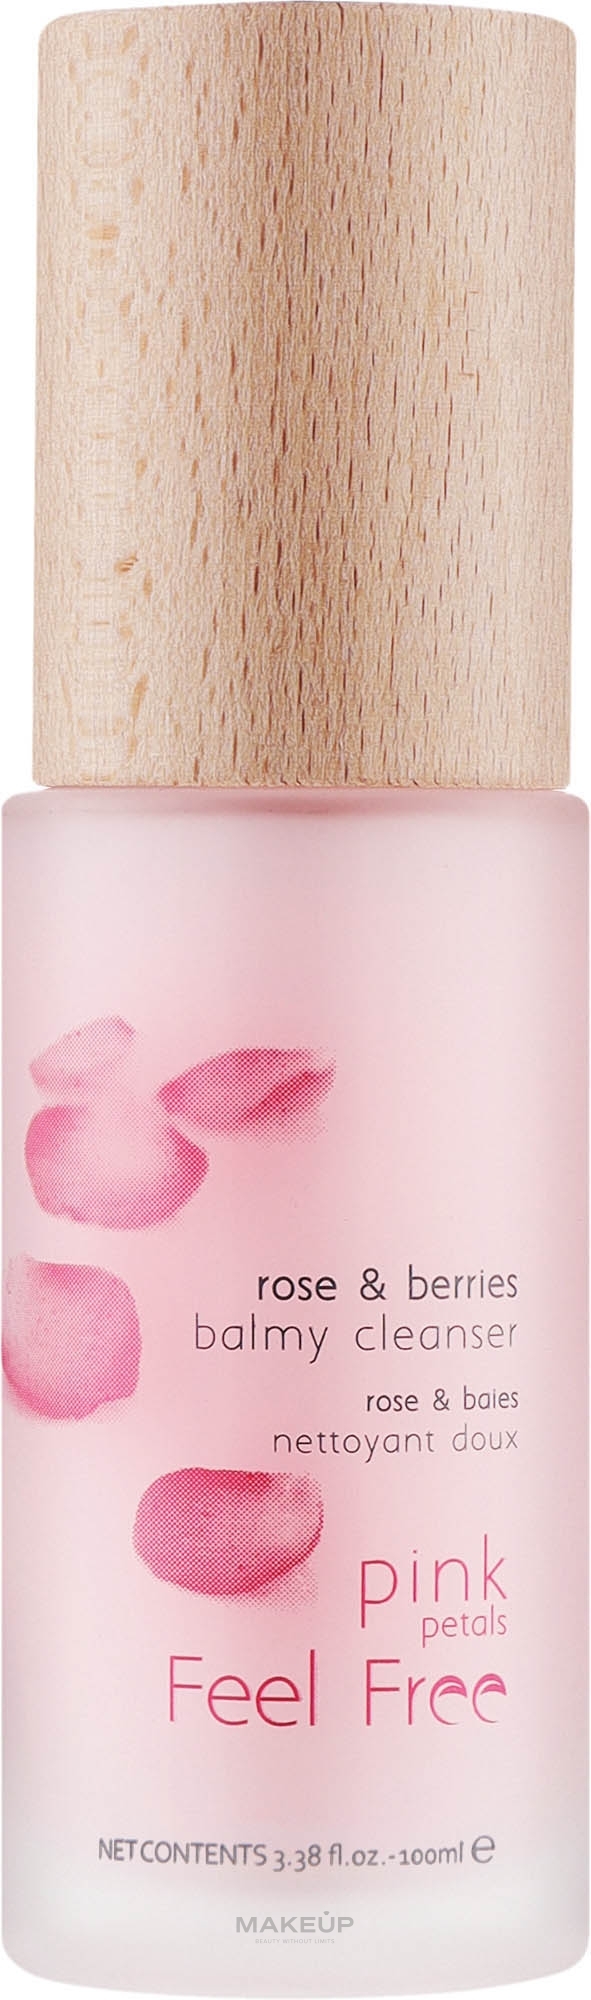 Очищающий бальзам для умывания - Feel Free Rose & Berries Balmy Cleanser — фото 100ml